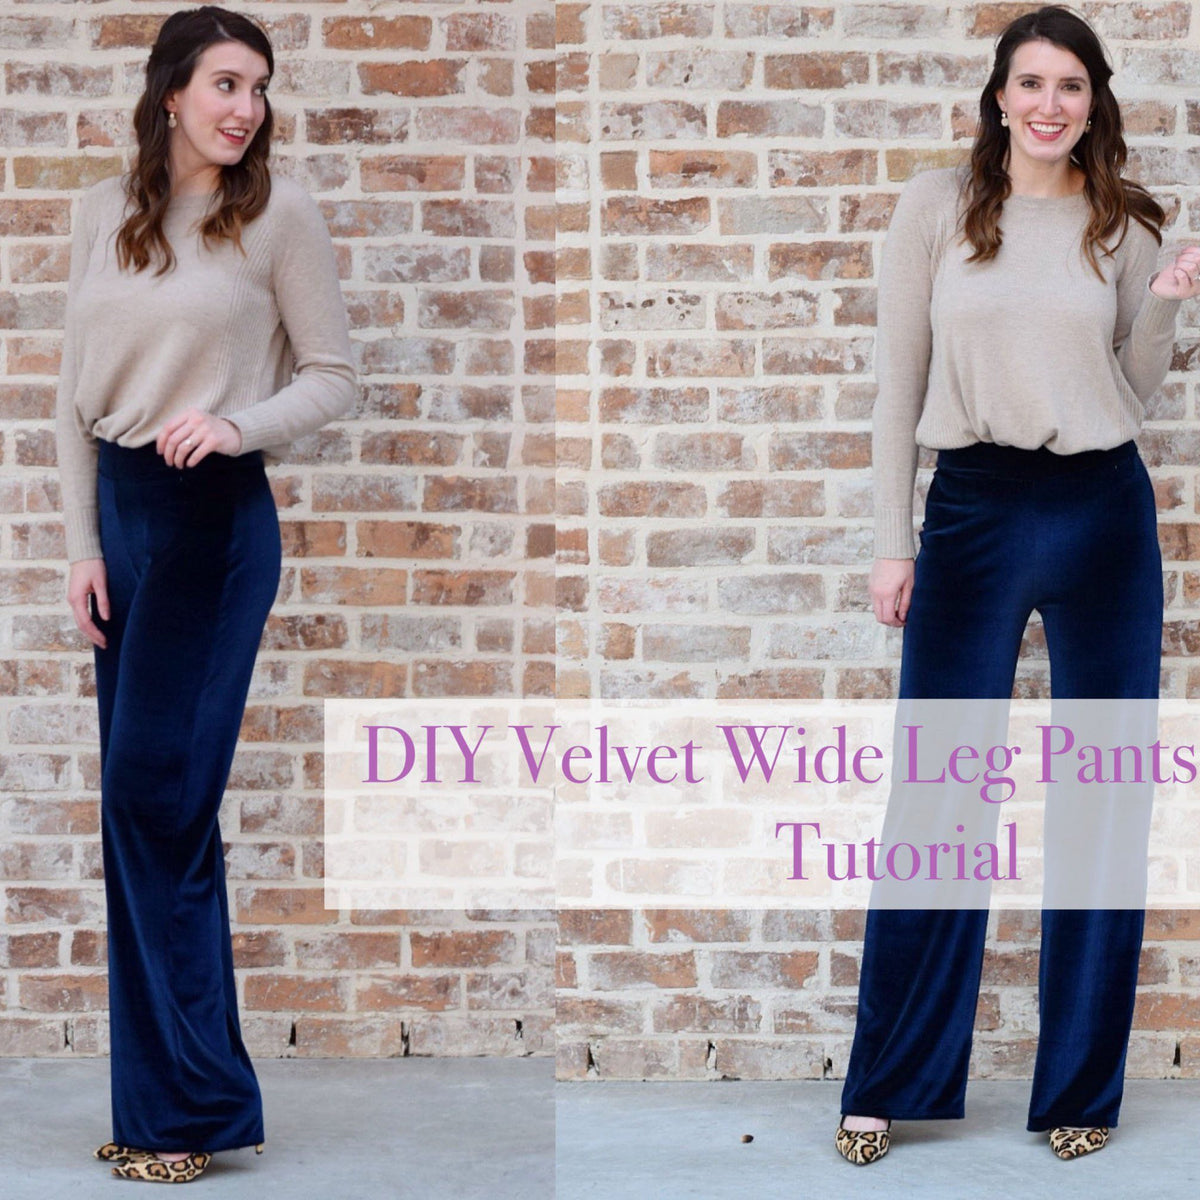 DIY Velvet Wide Leg Pants Sewing Tutorial e8a3c72e 73dc 4d27 a85c